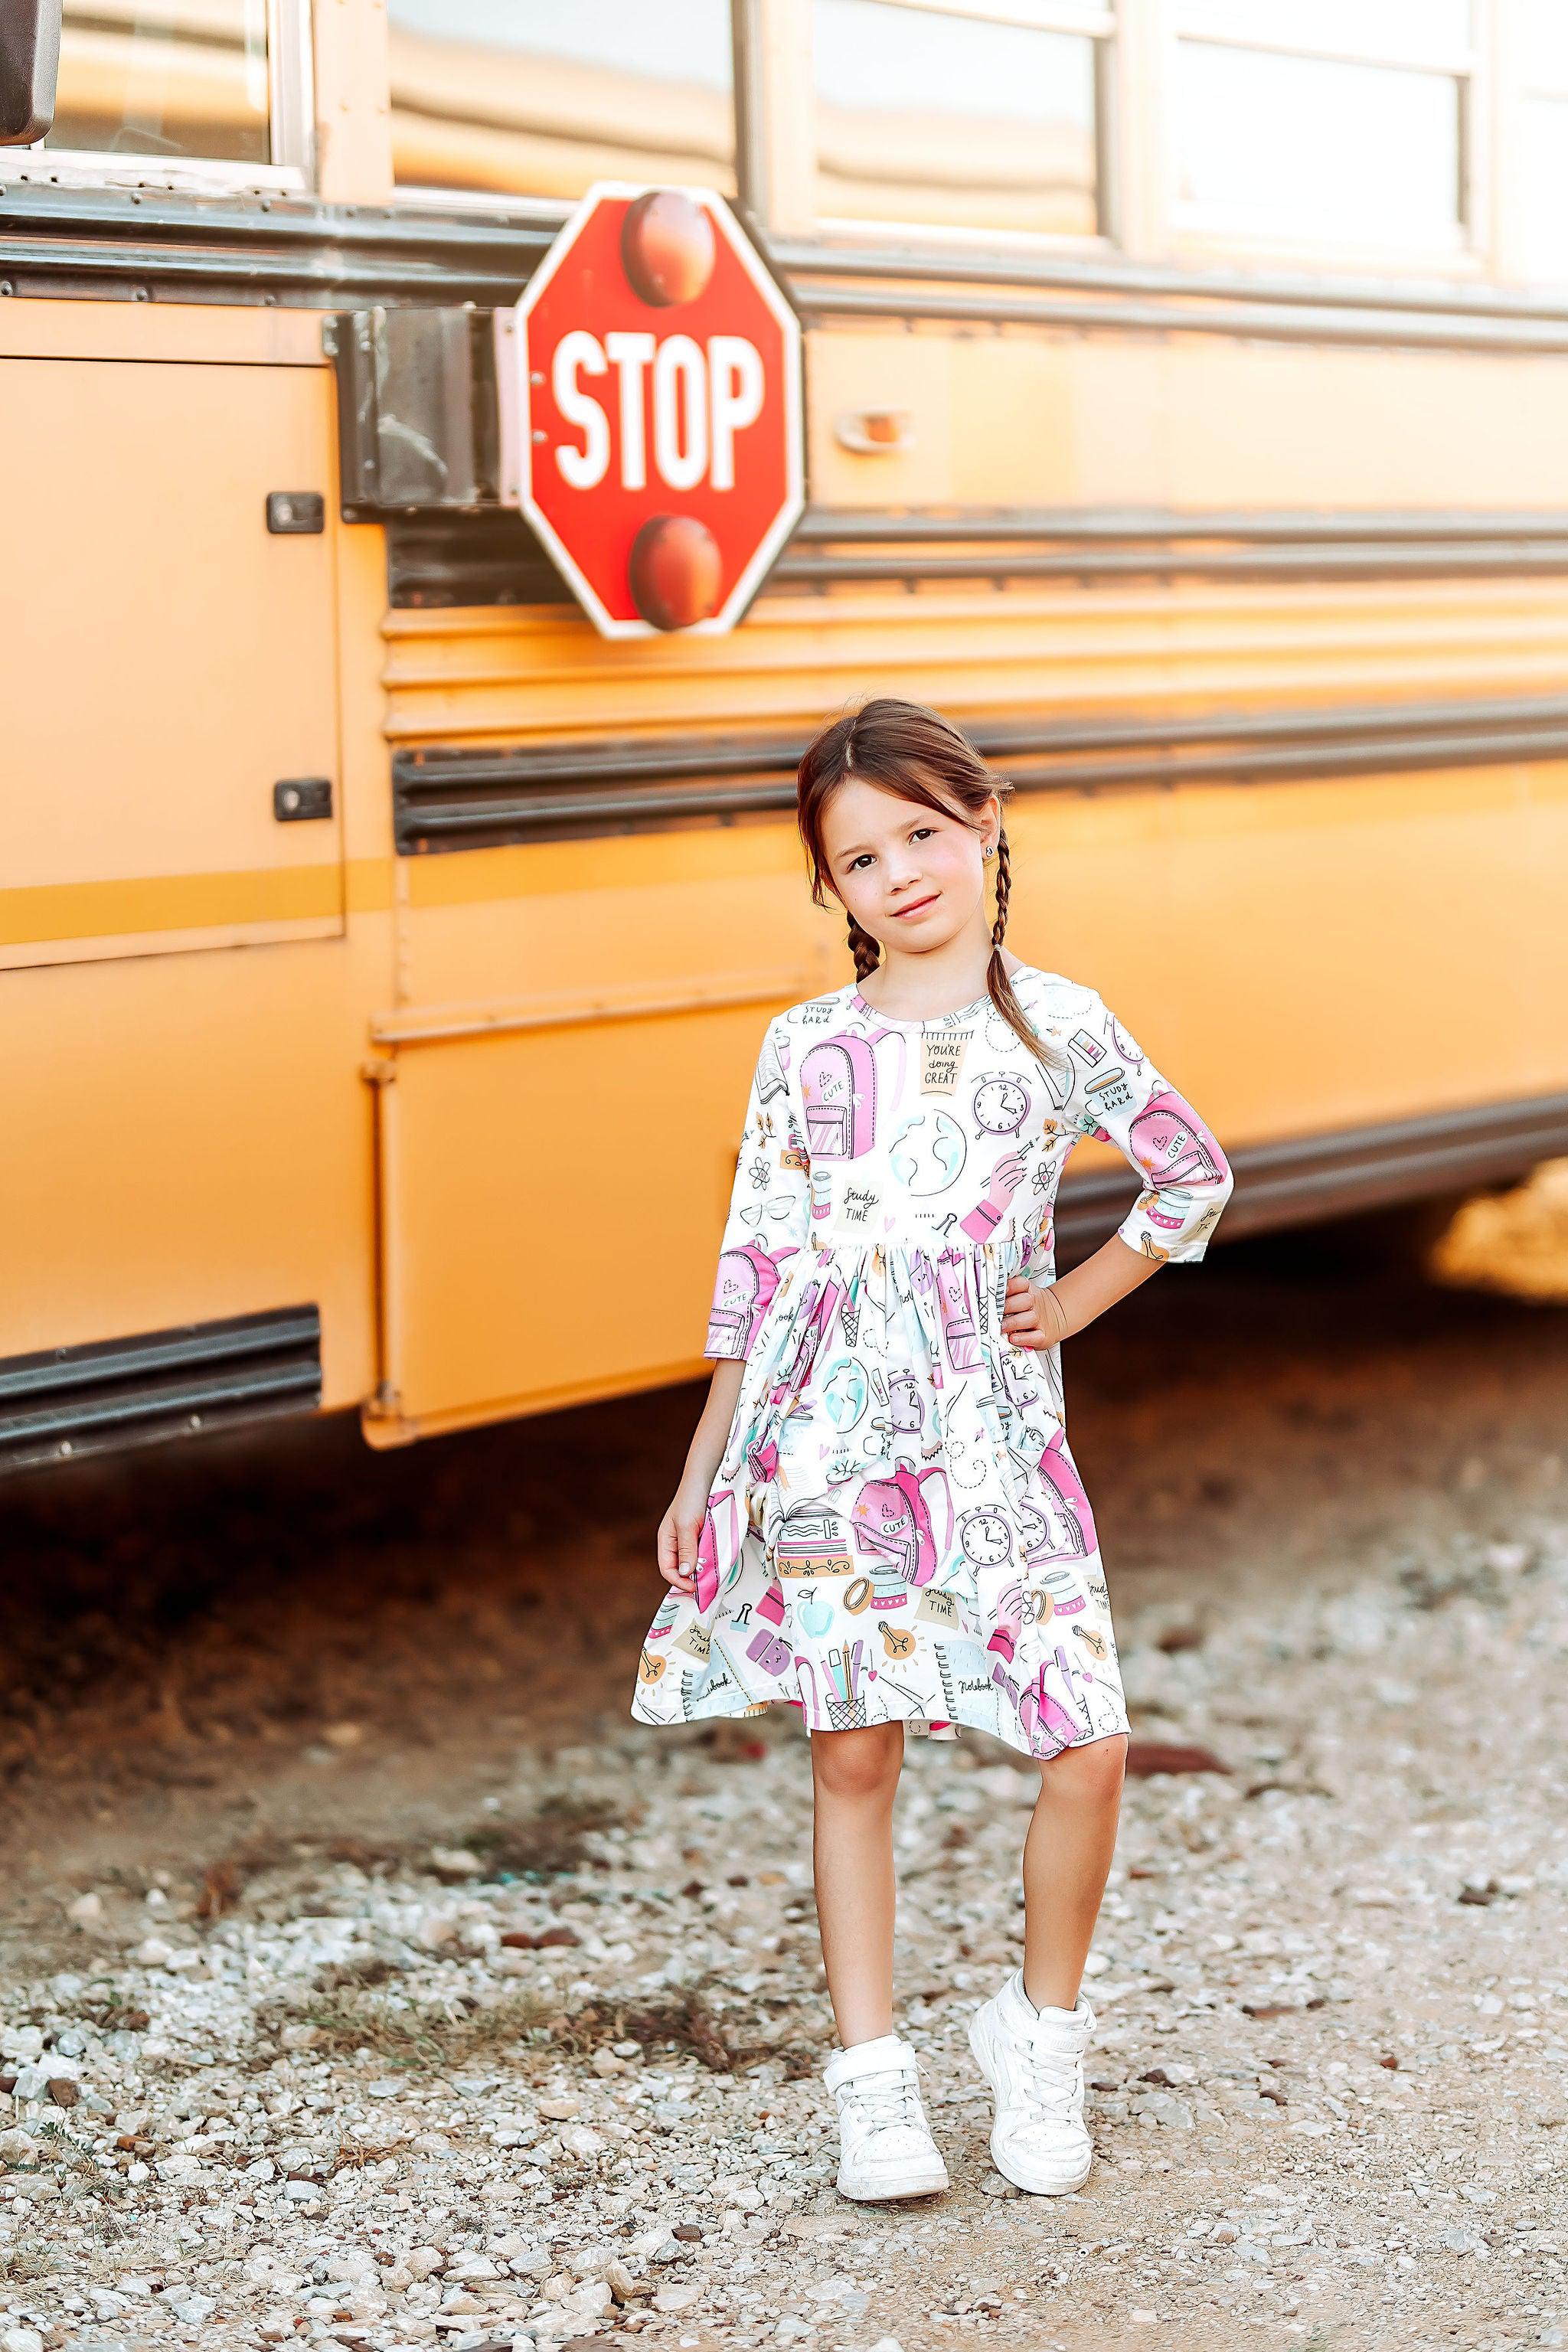 School is Cool Pocket Twirl Dress-Mila & Rose ®